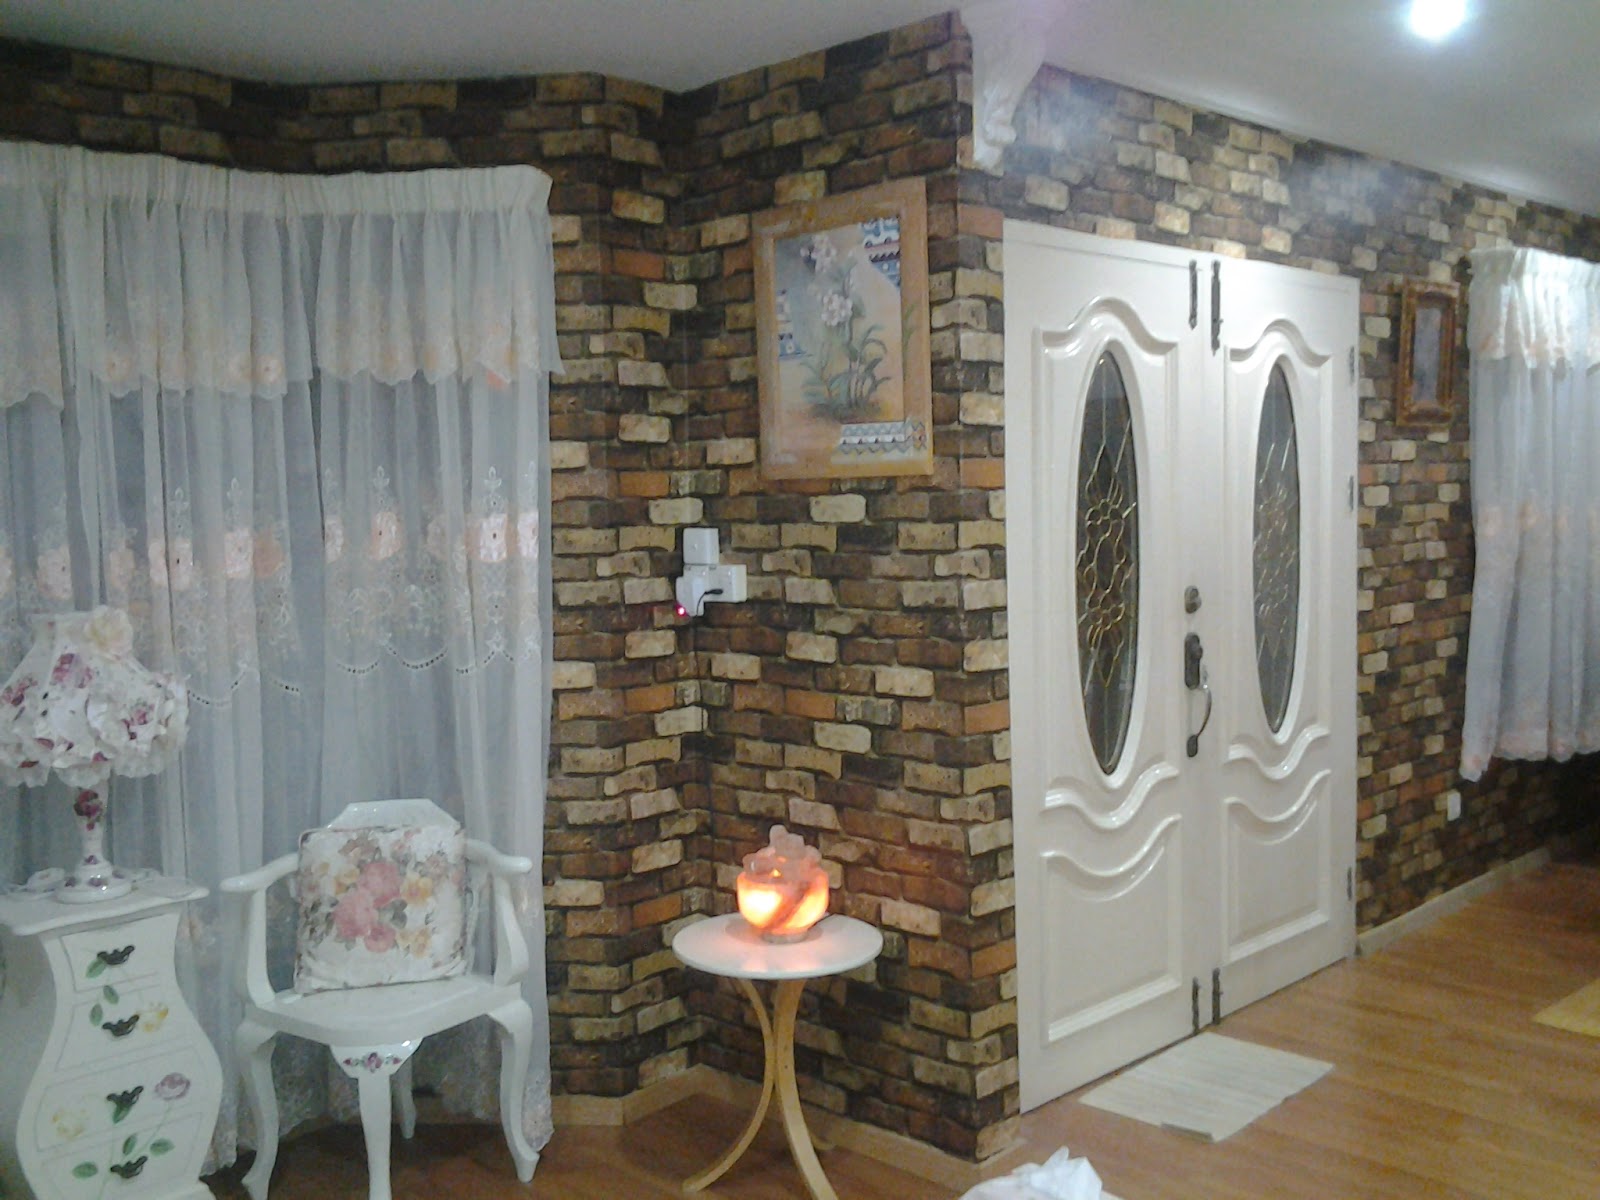 wallpaper gm klang,room,property,wall,interior design,furniture